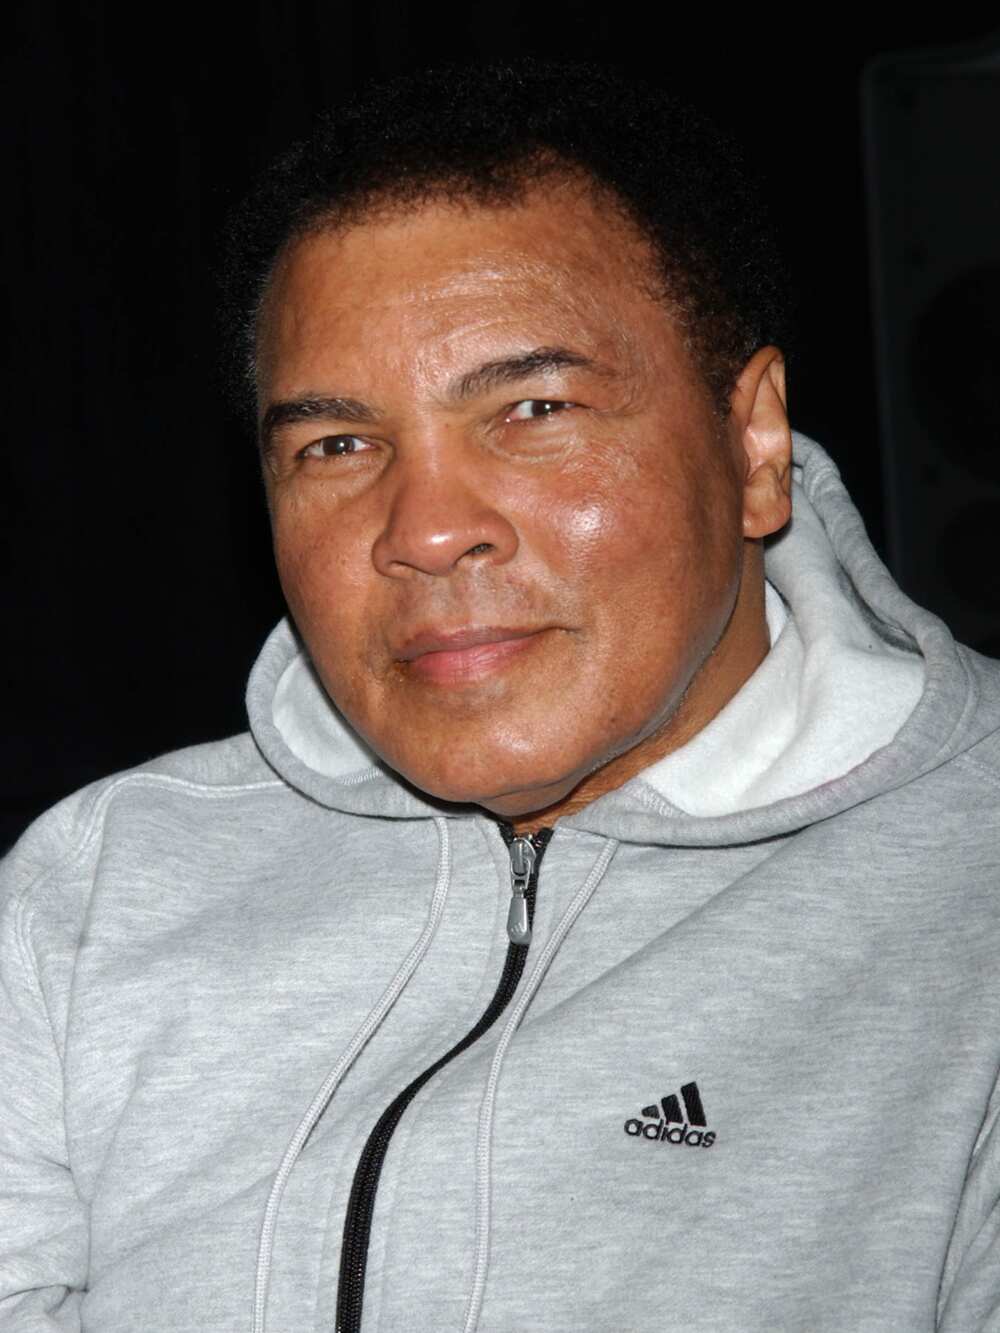 An sanya sunan Muhammad Ali a wani katafaren filin jirgin Amurka